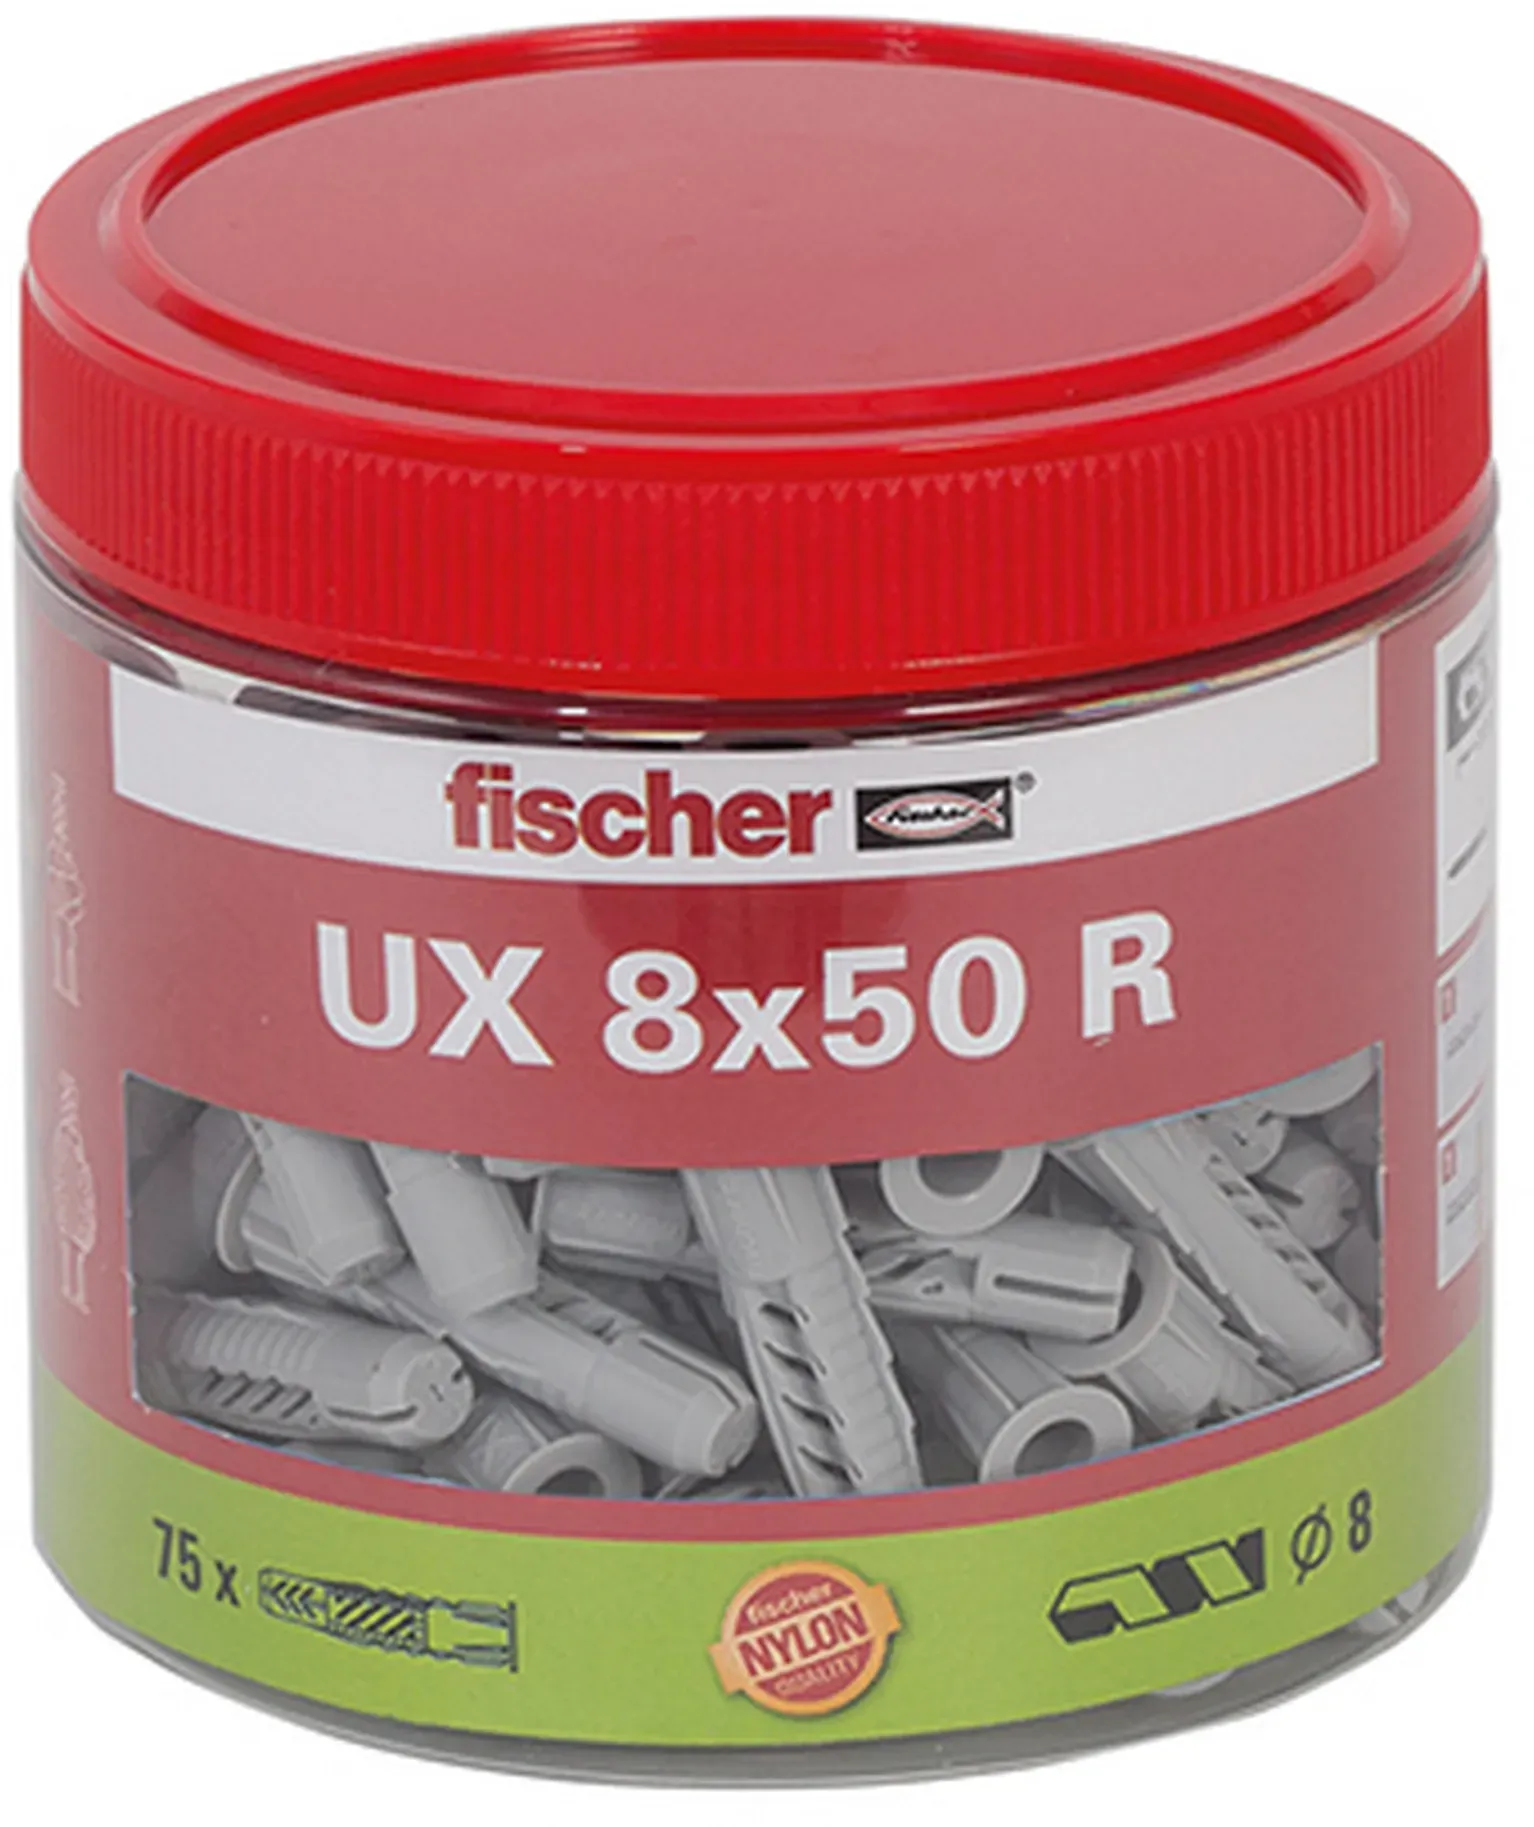 Bild von Universaldübel UX 8x50 R Dose, 75er-Pack (531026)